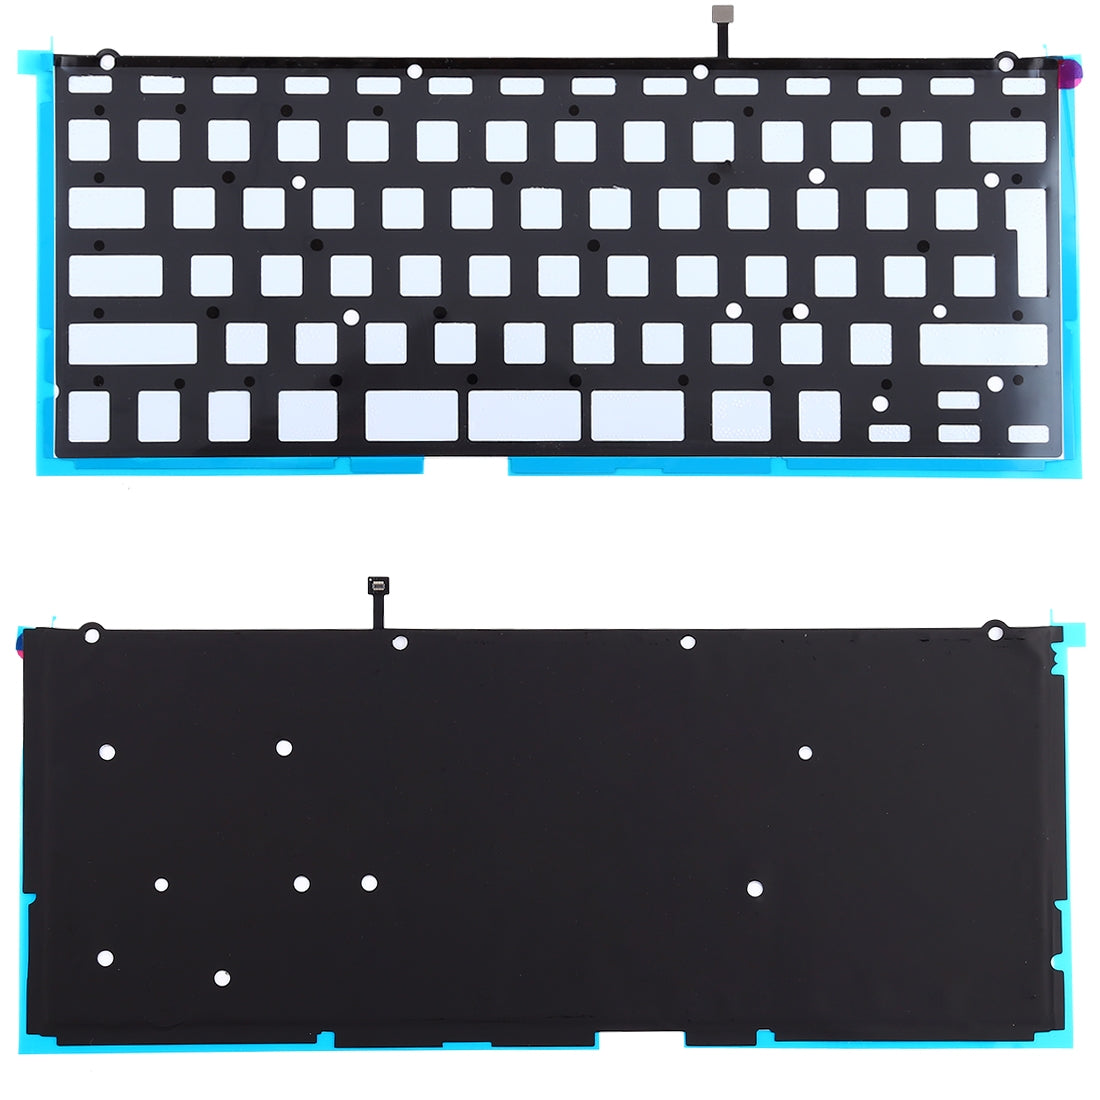 Backlight Keyboard UK Version without ñ MacBook Pro 13.3 A1425 2012